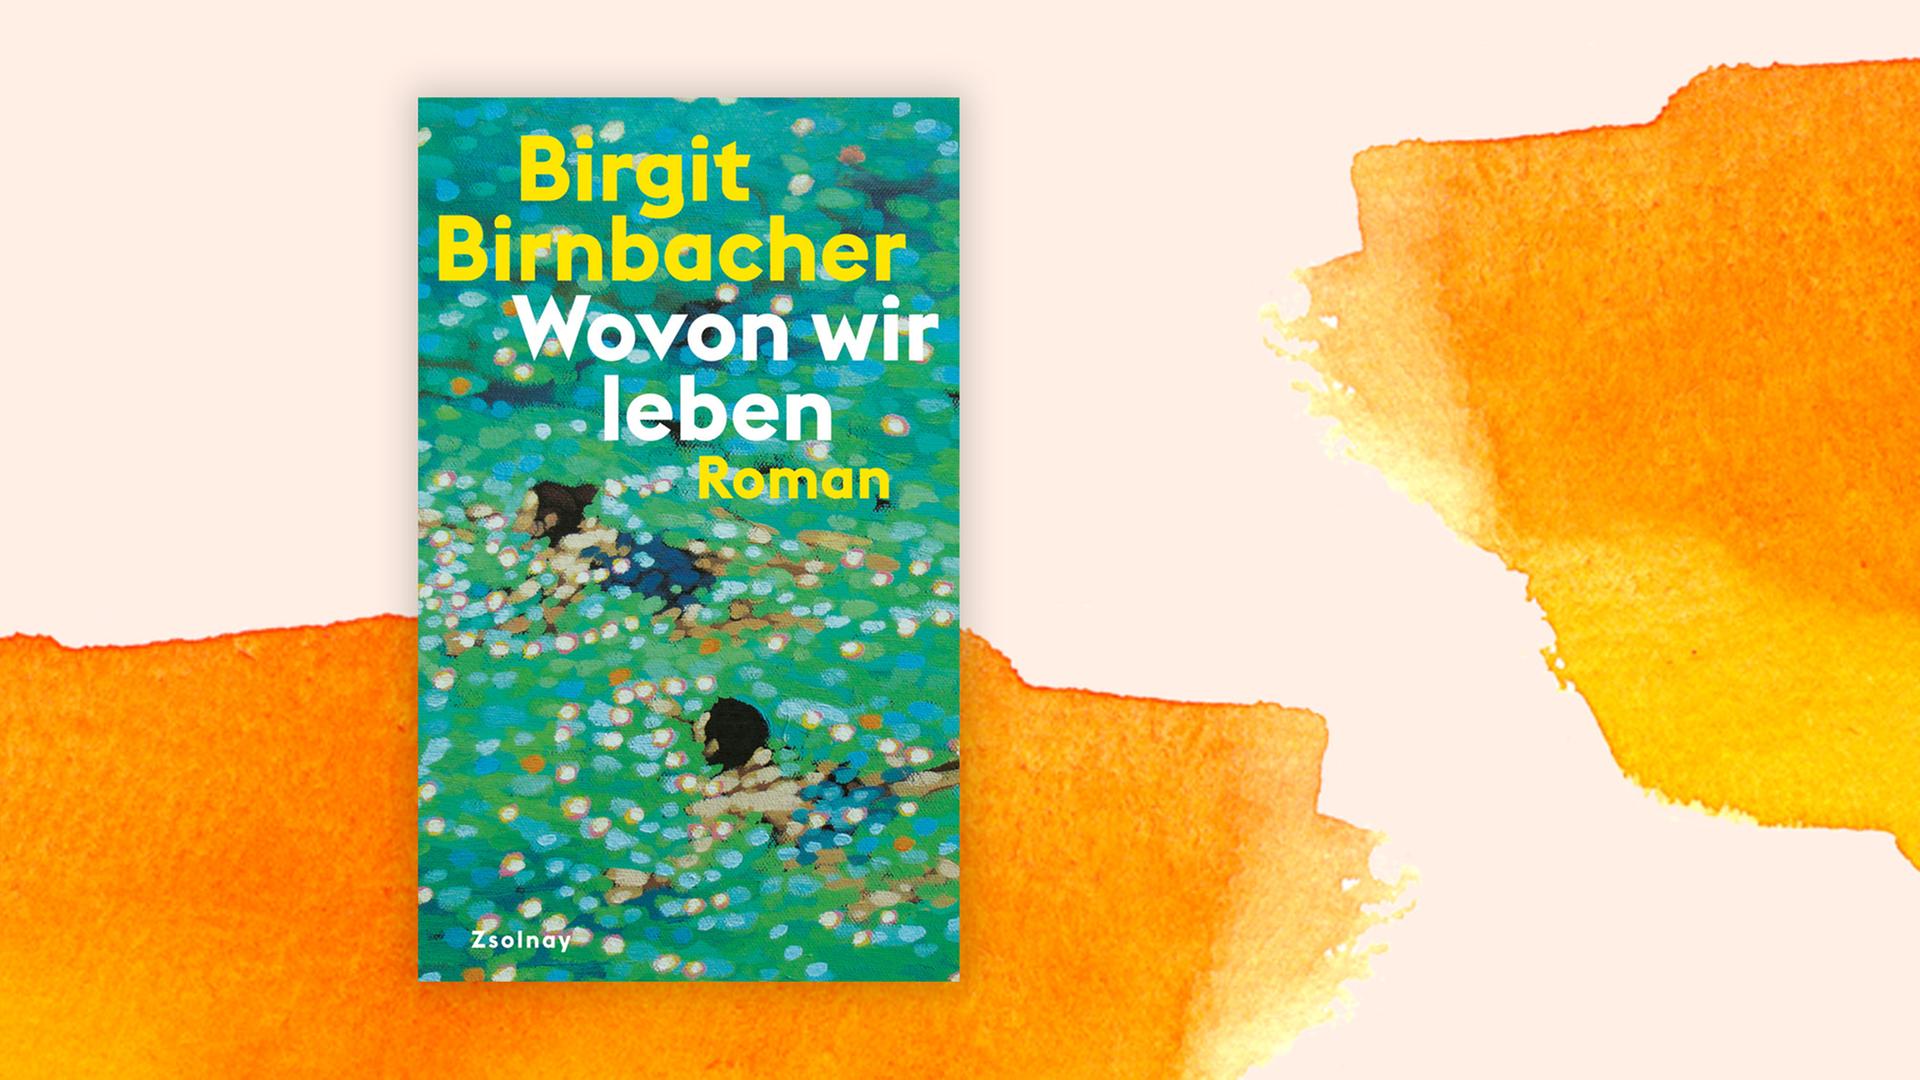 Das Buchcover „Wovon wir leben“ von Birgit Birnbacher ist vor einem grafischen Hintergrund zu sehen.

